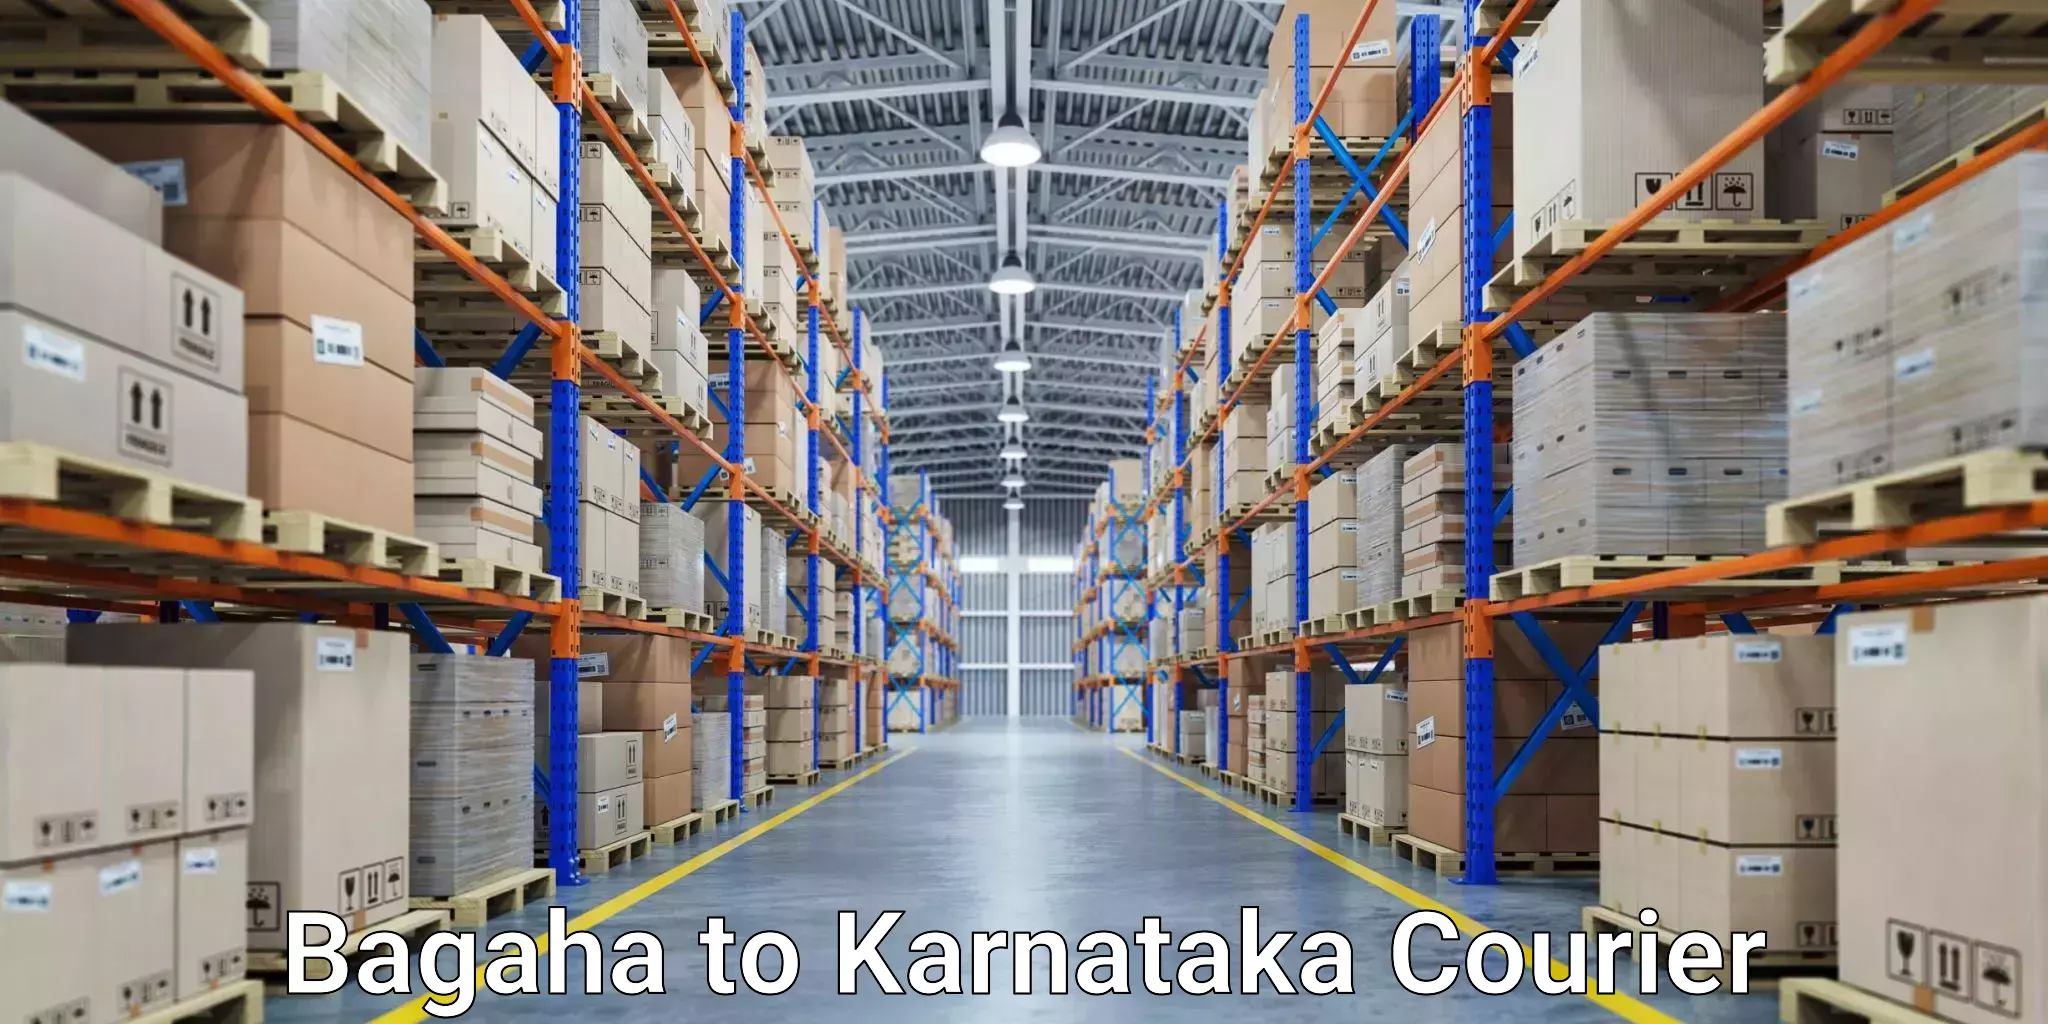 Reliable shipping solutions Bagaha to Karnataka